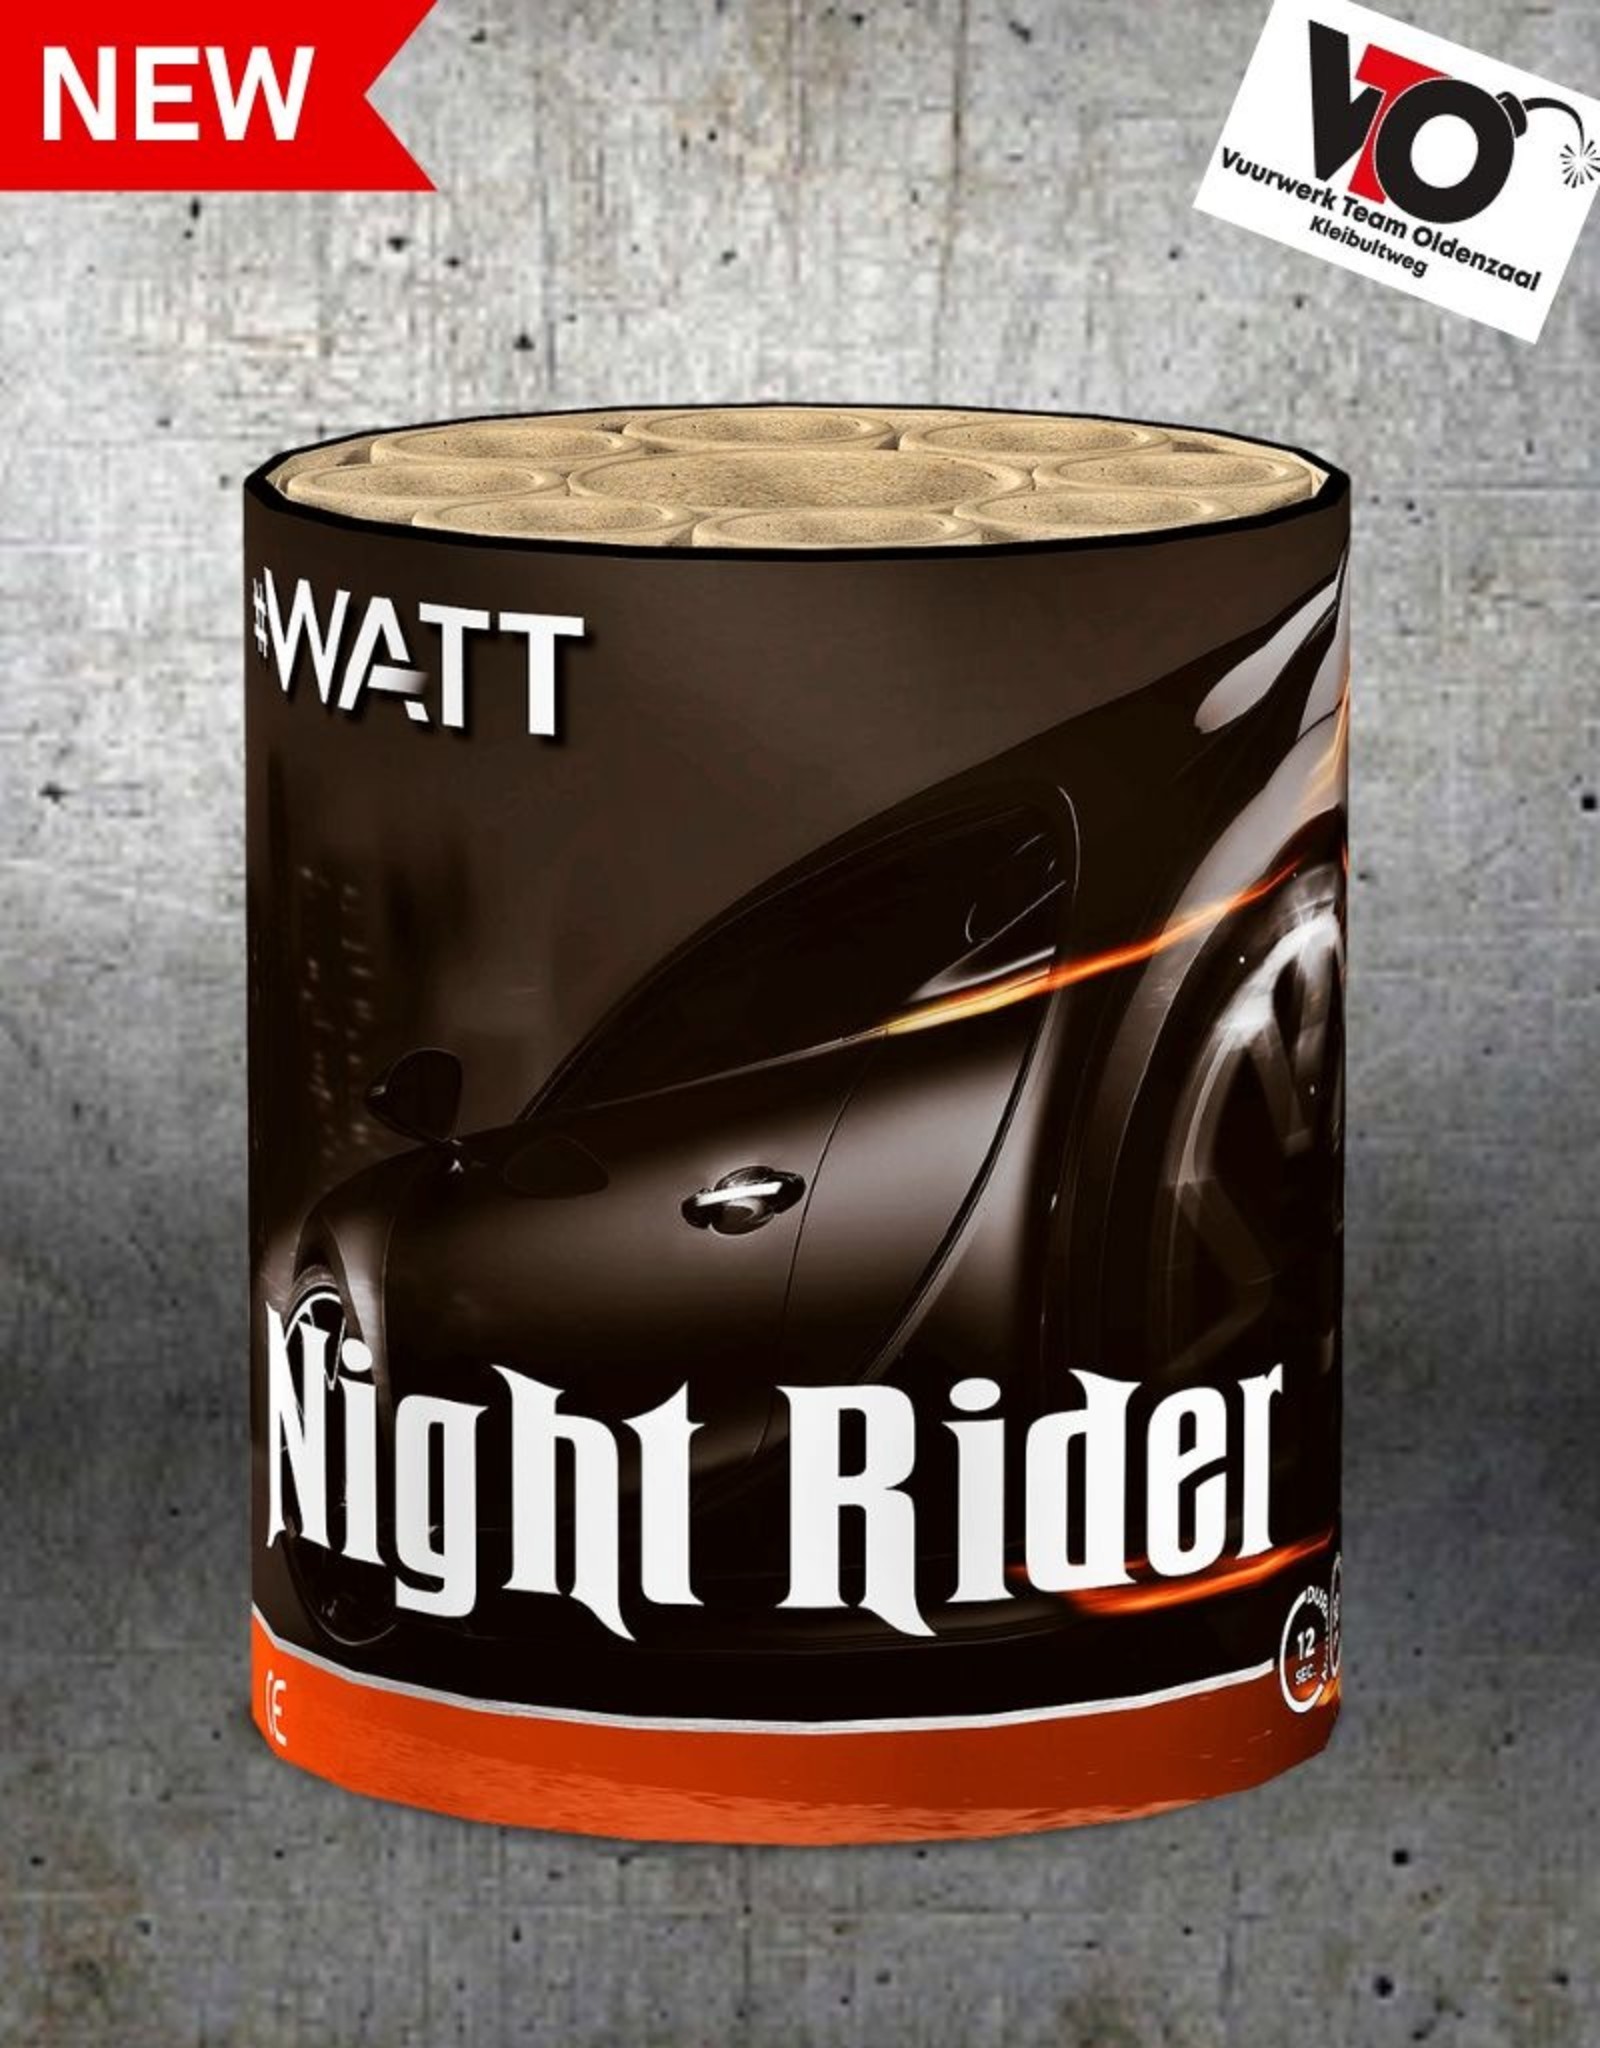 #WATT Night Rider #WATT 8sh